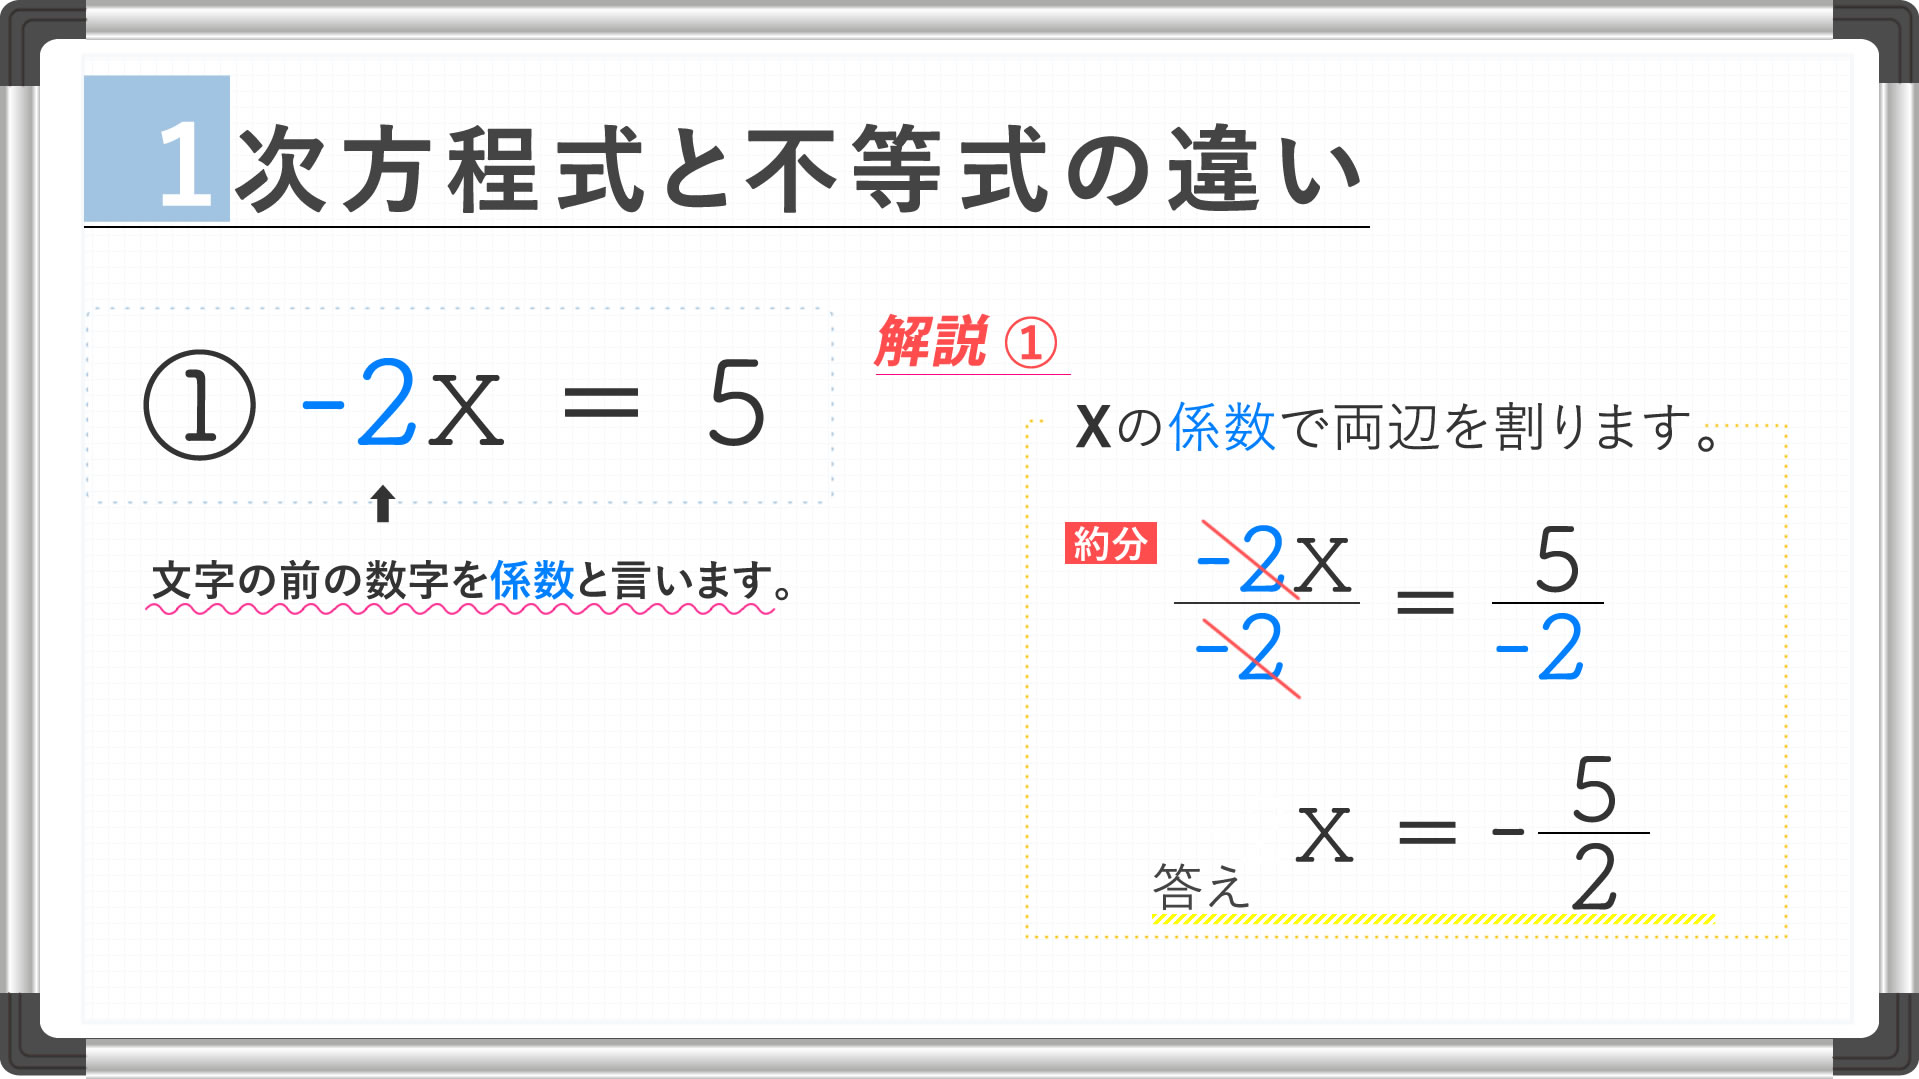 一次方程式と一次不等式の違い 看護受験の必須 数学の公式を確認テスト Vol15 Kazアカデミー 大阪の看護学校 看護予備校